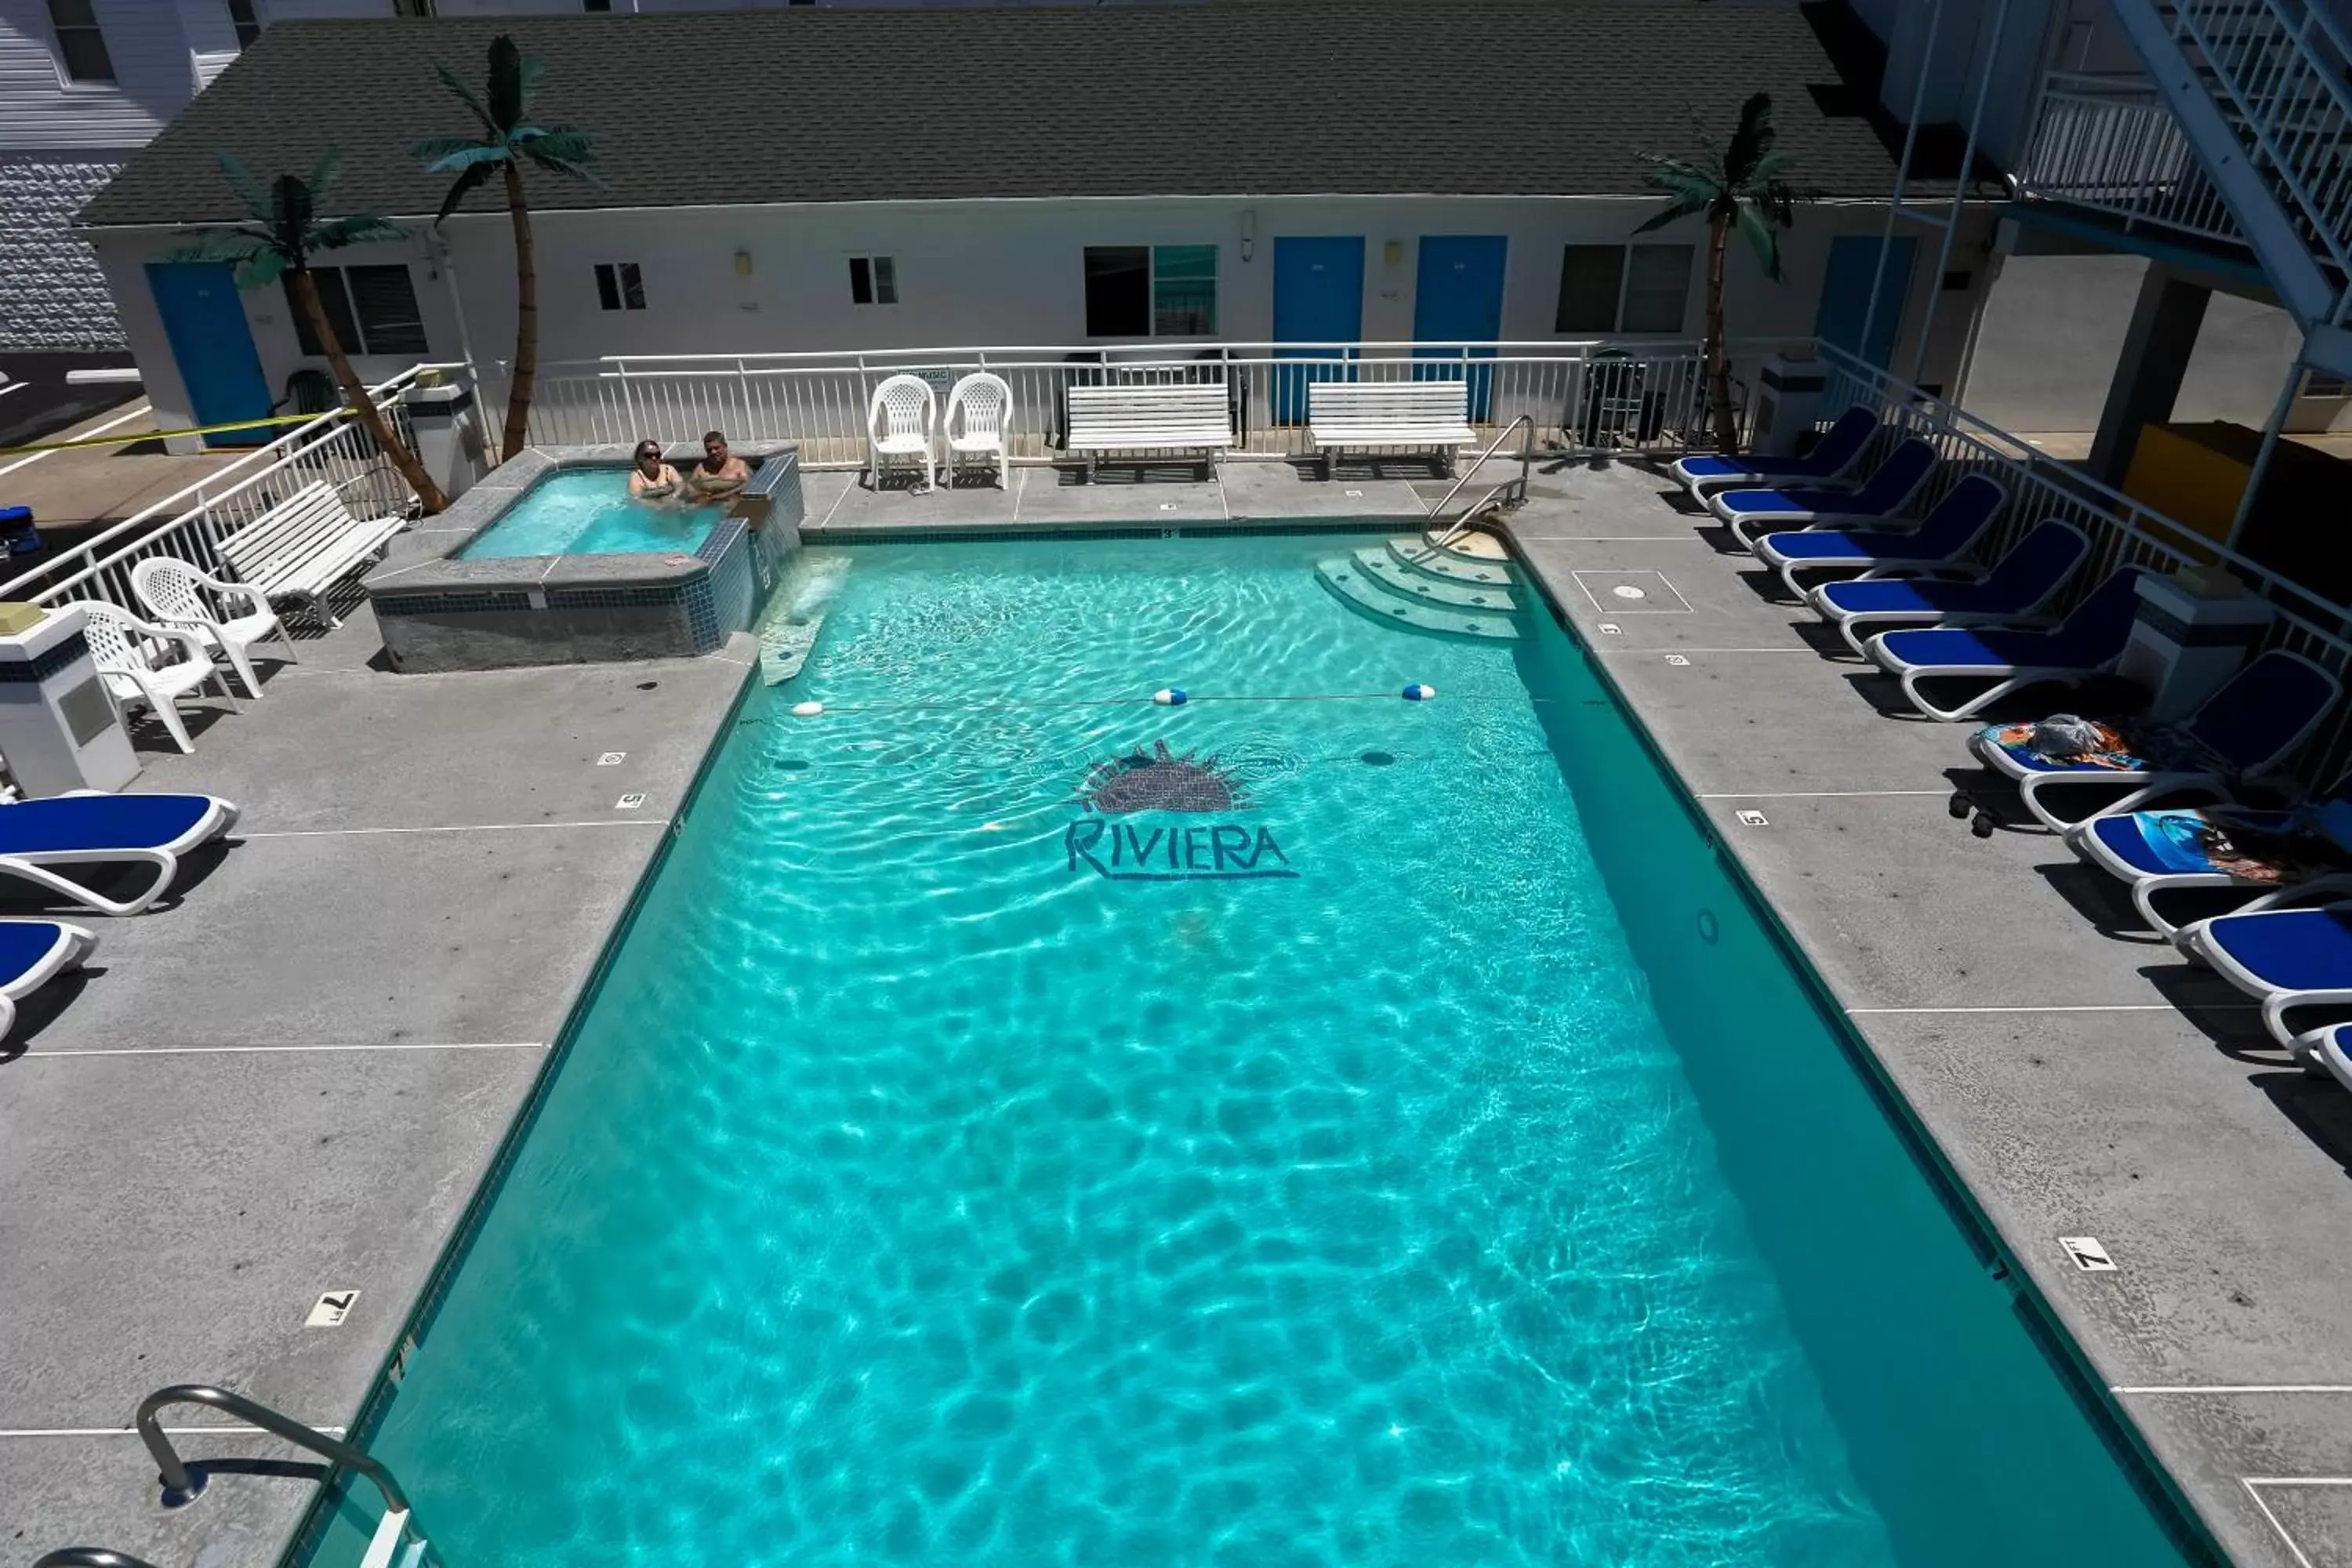 Pool View in Riviera Resort & Suites